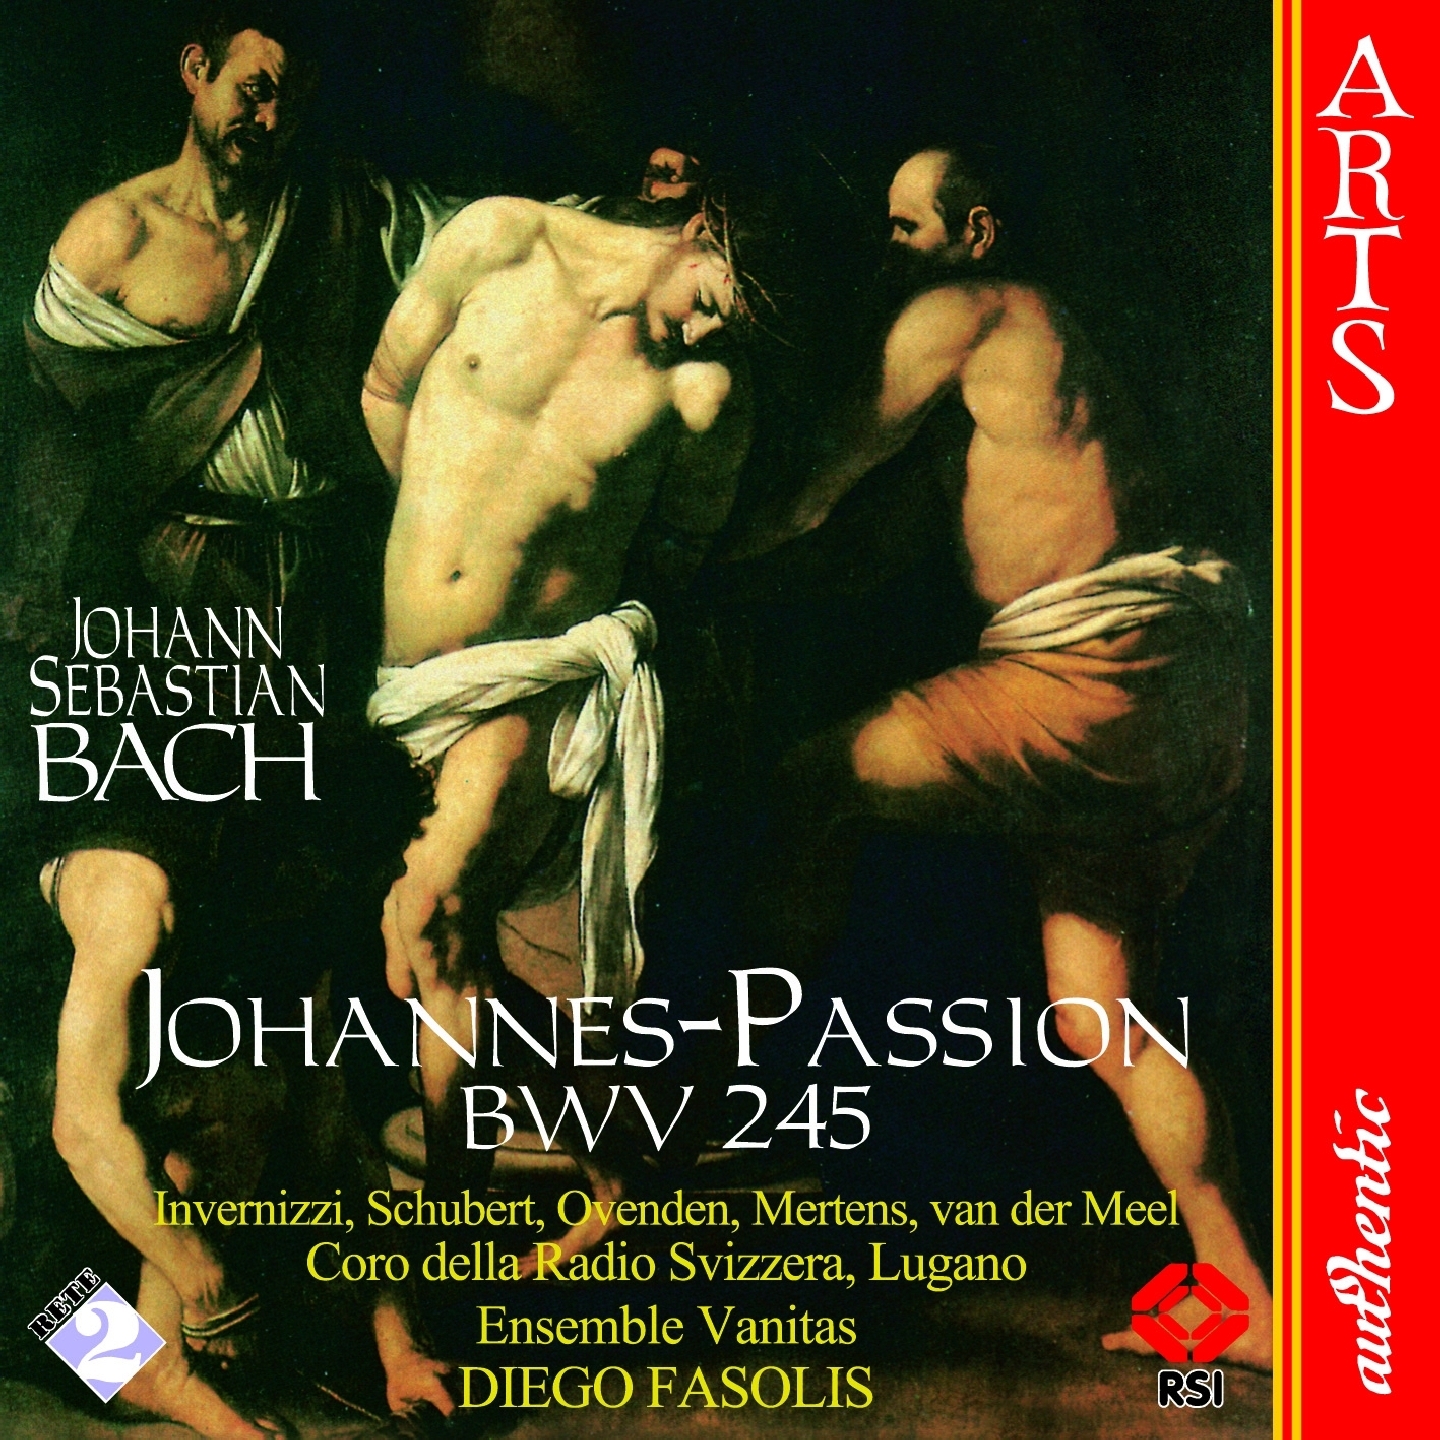 JohannesPassion, BWV 245, Part I: 10. Recitative " Derselbige Jü nger"